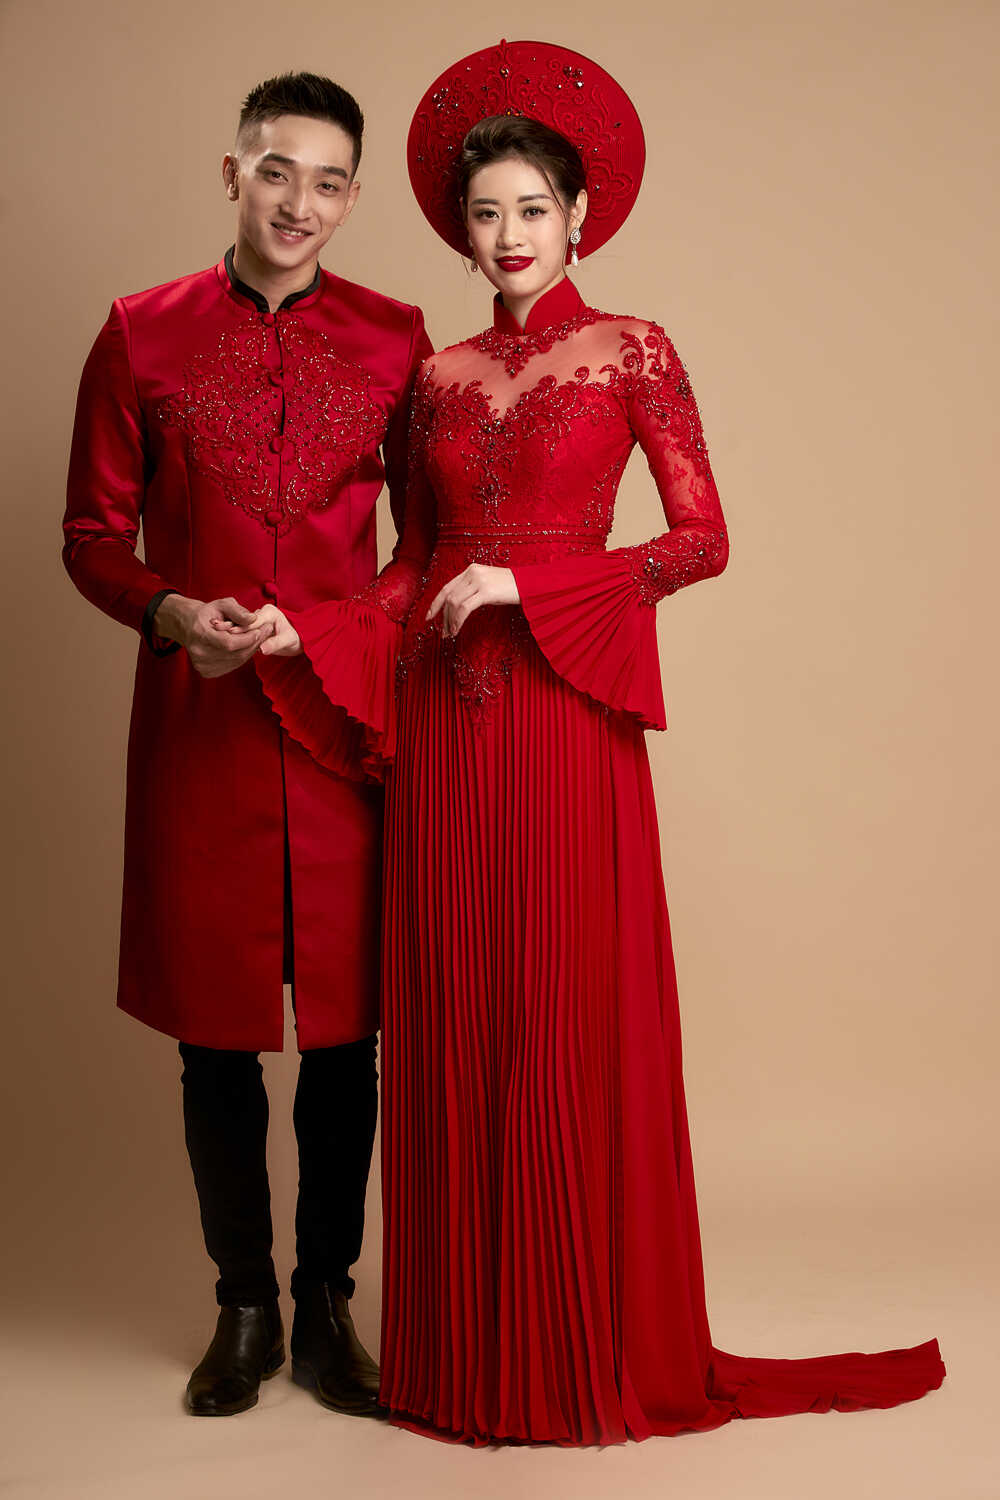 Áo dài cưới đỏ thể hiện sự thủy chung